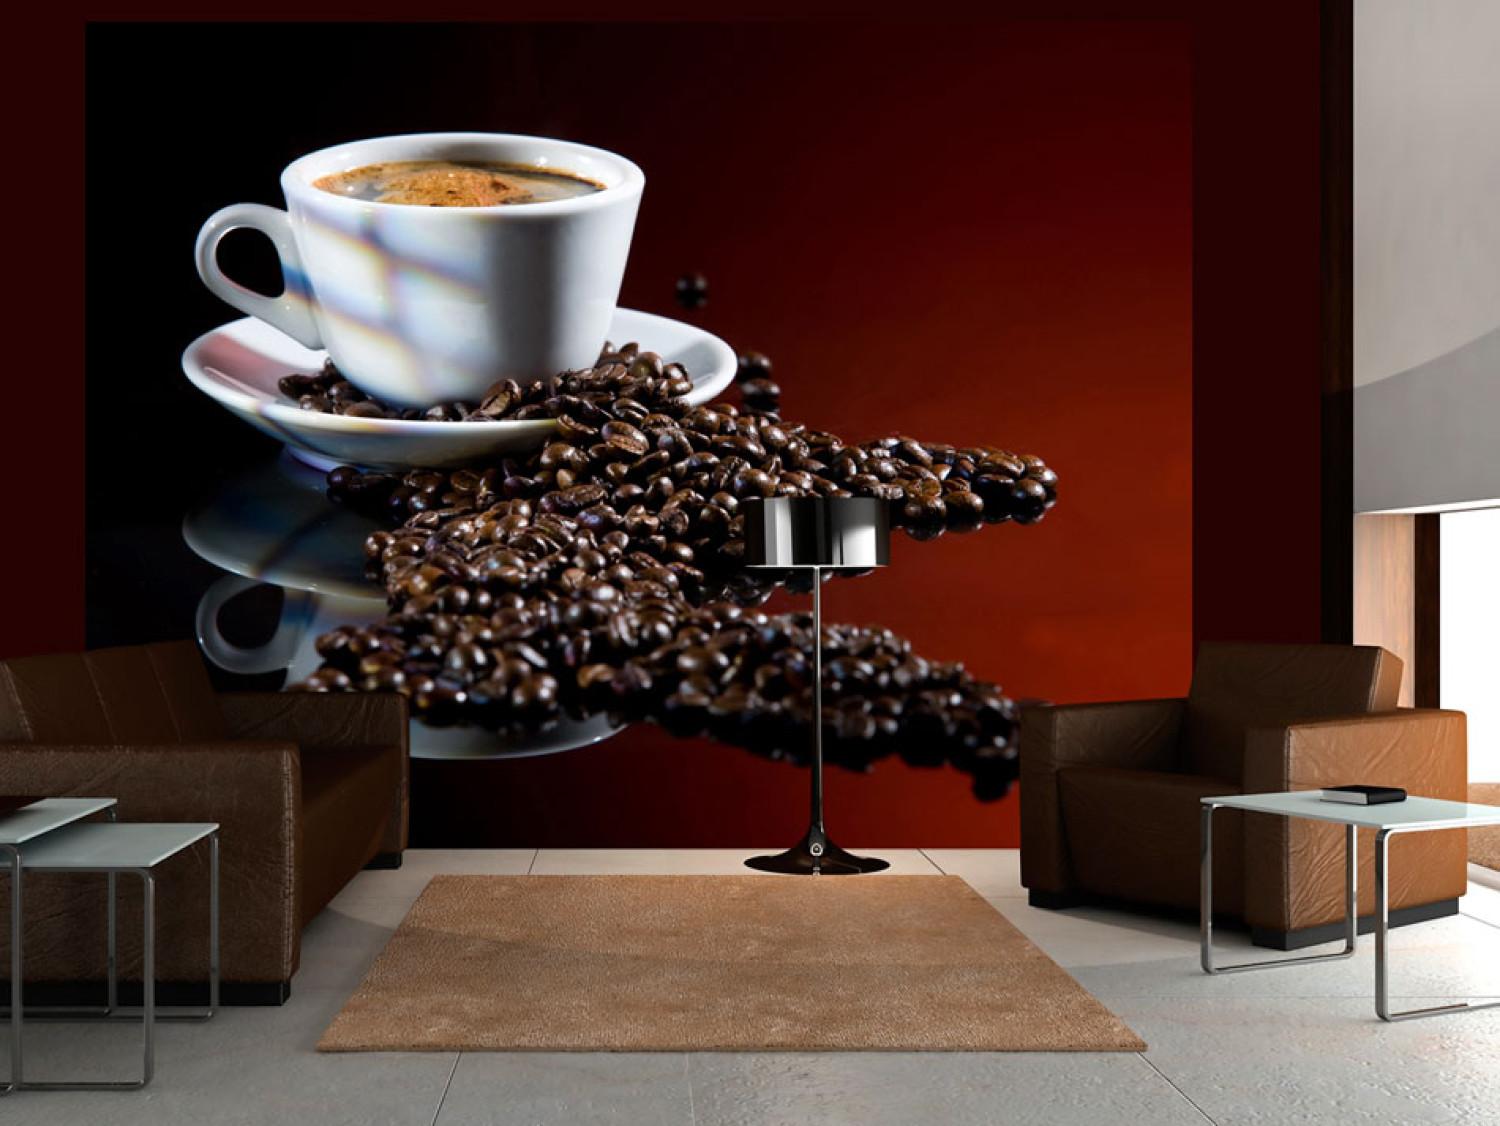 Fotomural a medida Café - motivo suave de café negro en taza blanca en fondo oscuro